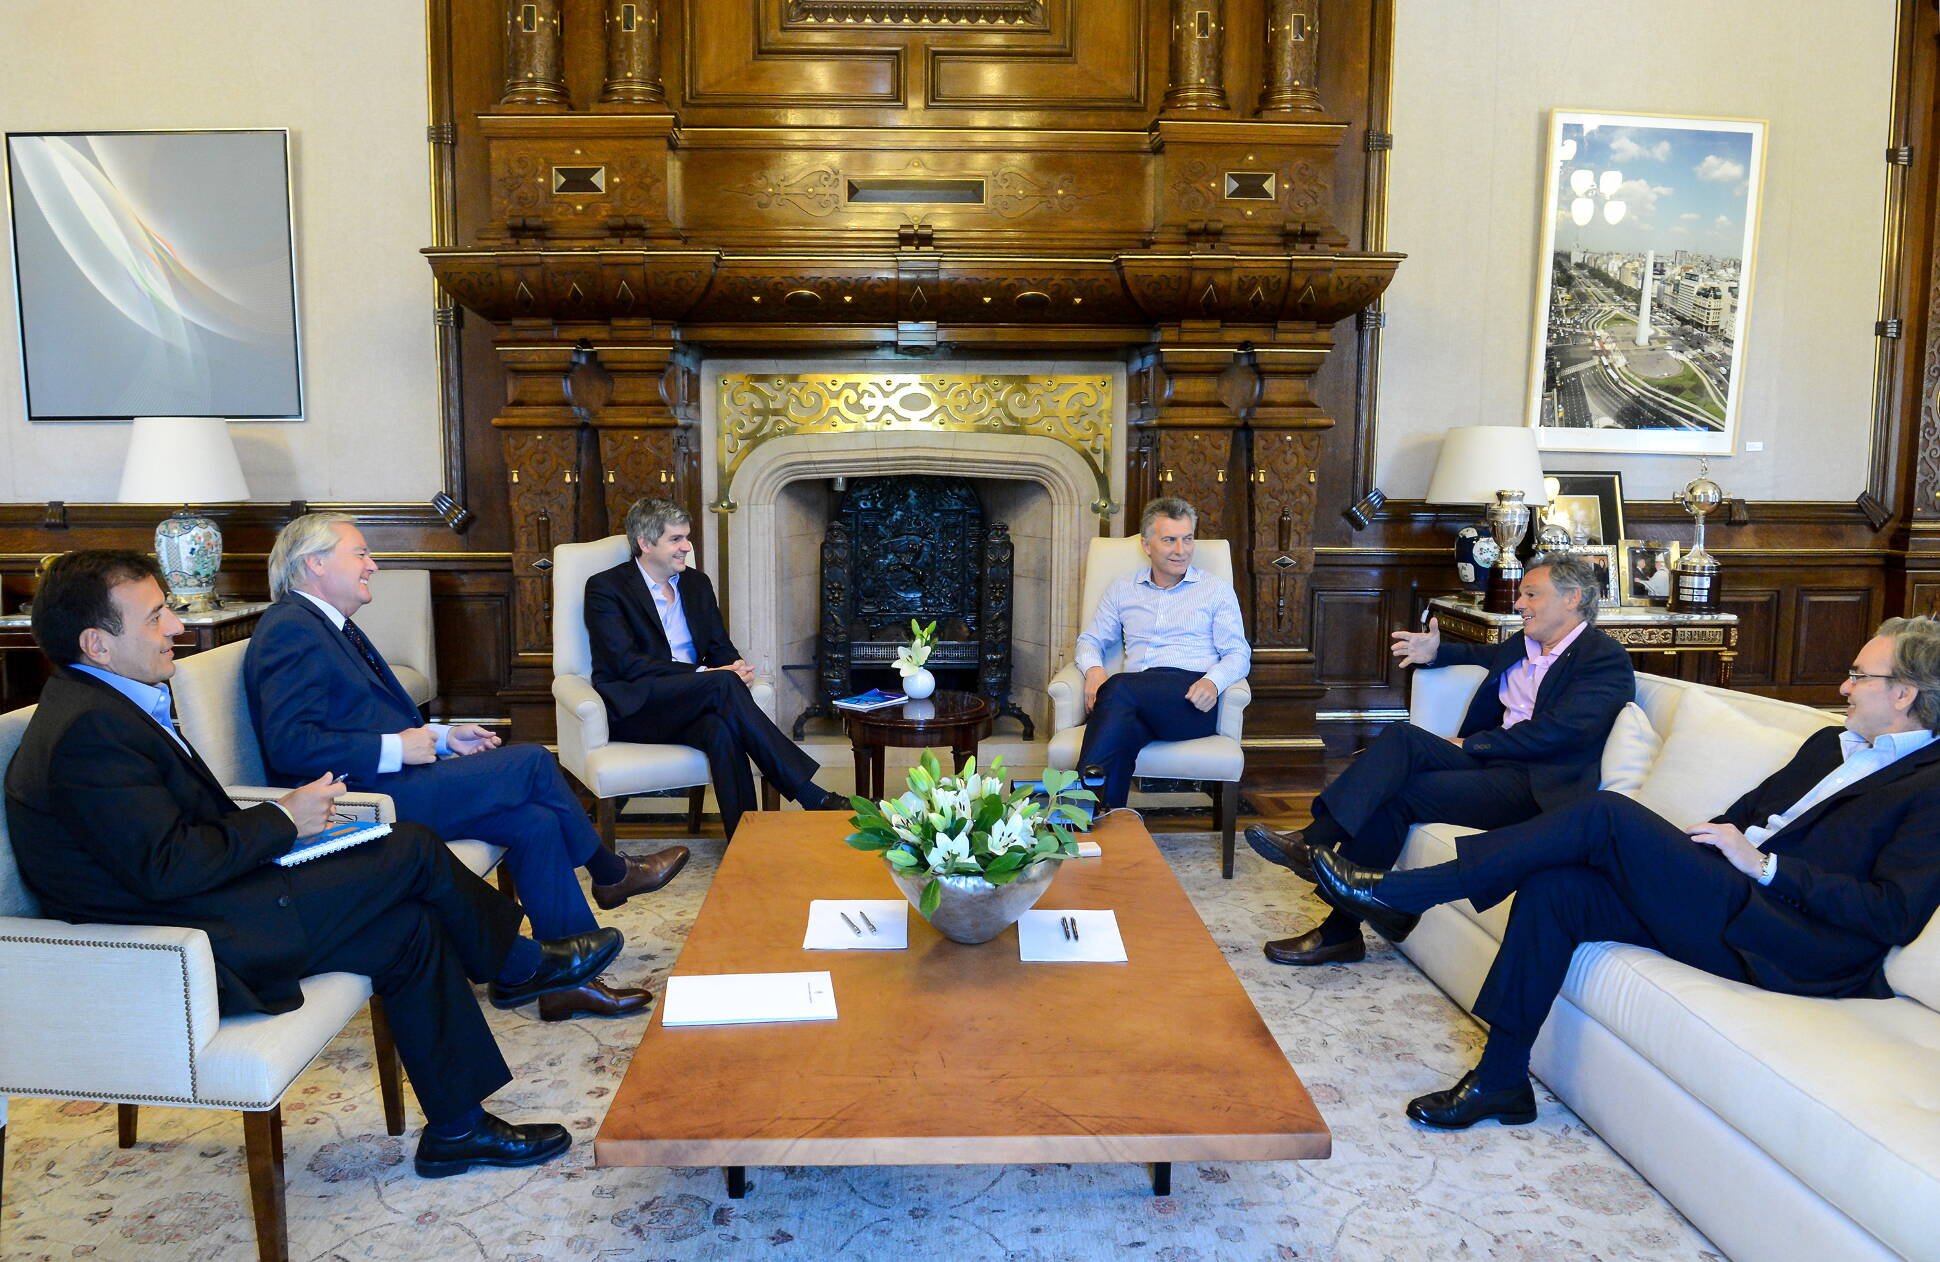 El presidente Macri mantuvo una reunión de coordinación de Gobierno